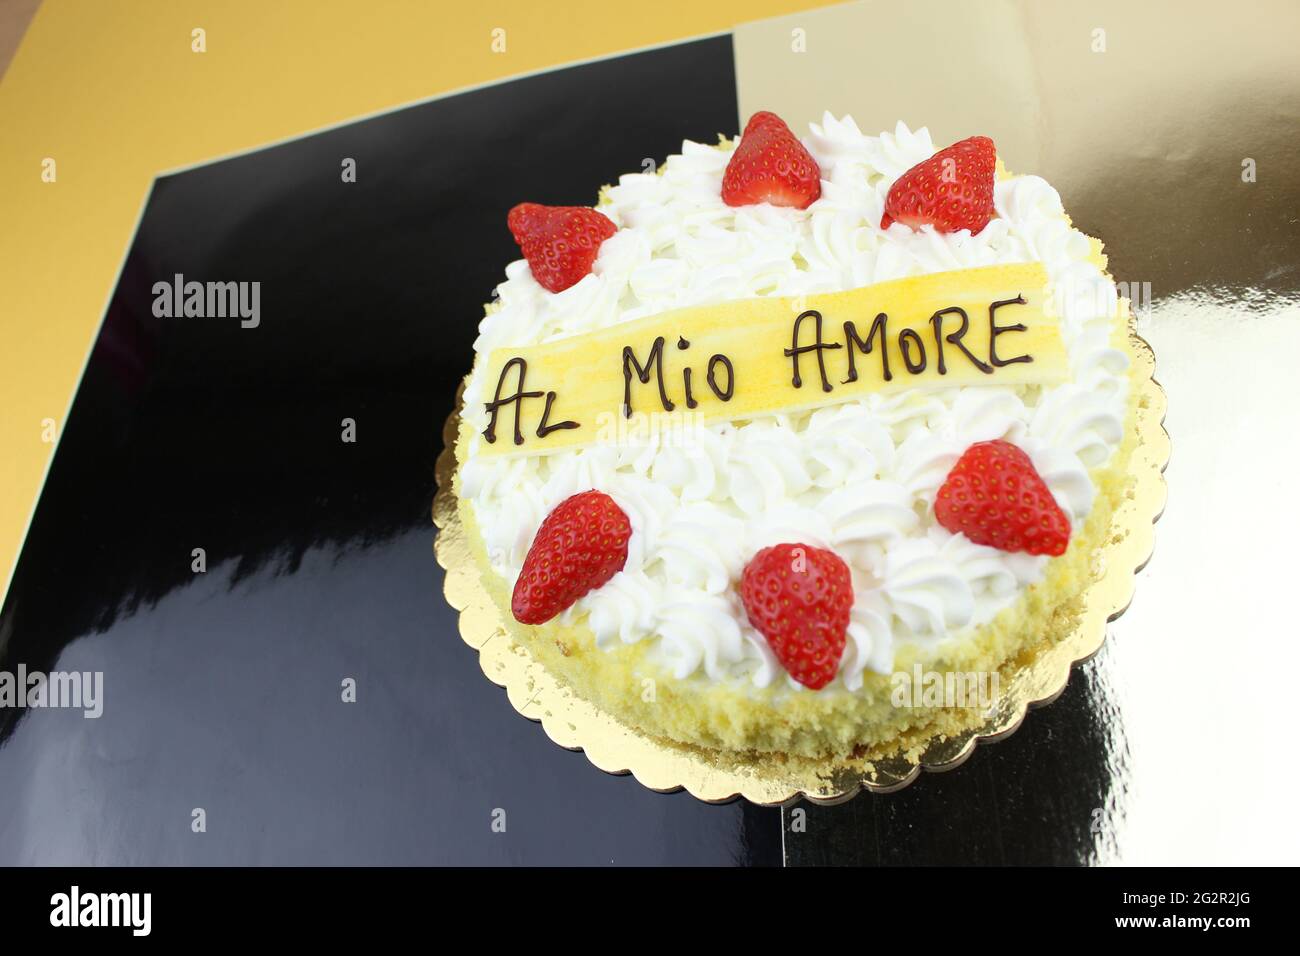 Gâteau aux fraises Amour écrit en italien 'Al Mio Amore' Banque D'Images